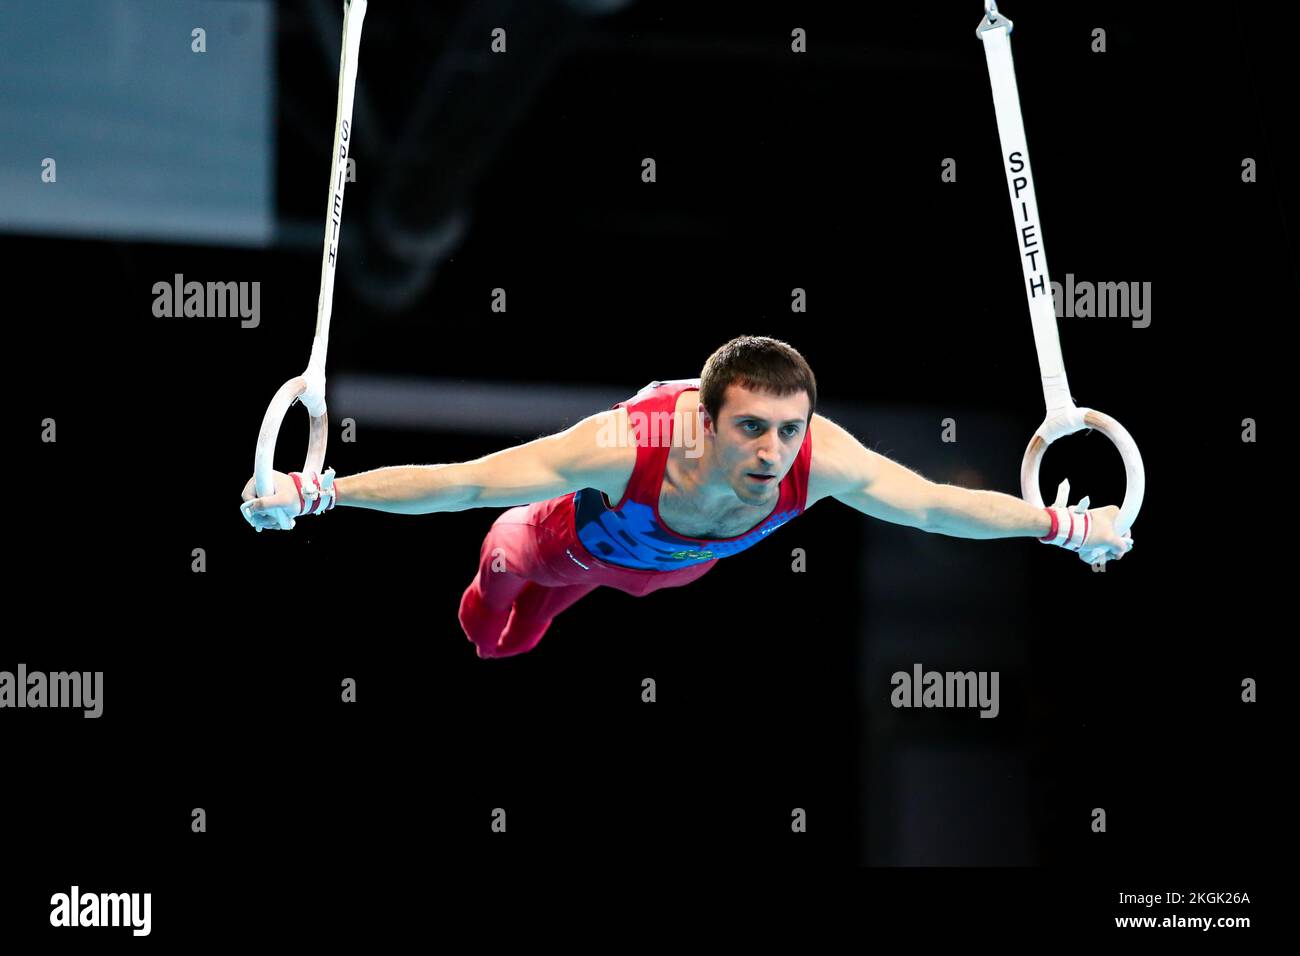 Szczecin, Pologne, 10 avril 2019 : Artur Davtyan, d'Arménie, participe aux compétitions sur les anneaux lors des championnats européens de gymnastique artistique Banque D'Images